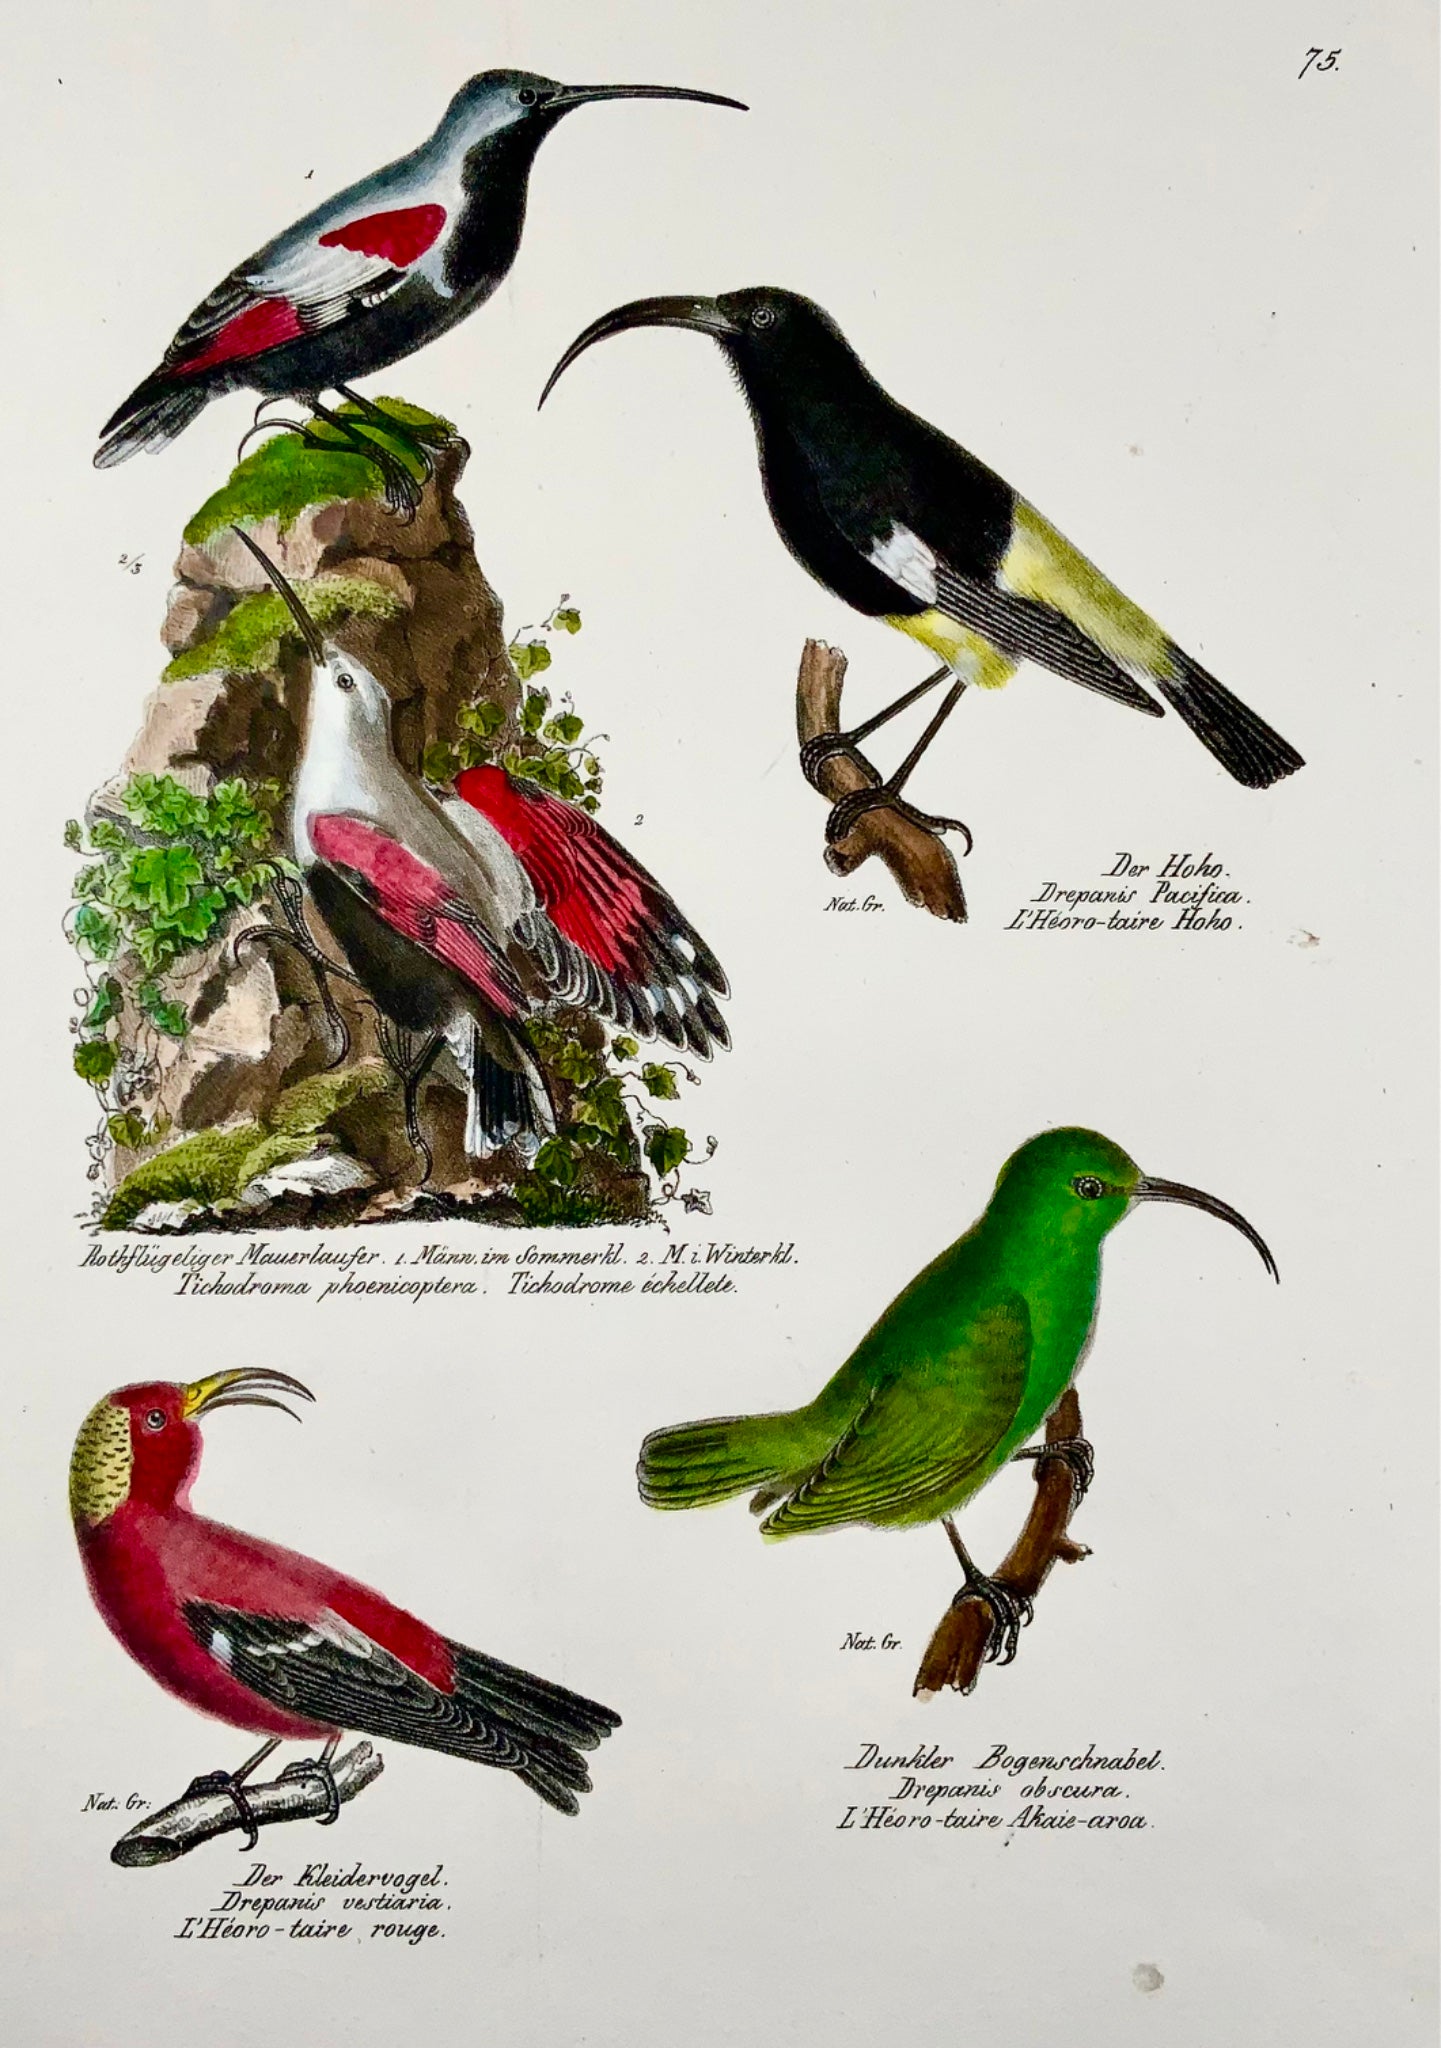 1830 Drepanis Wallcreeper, ornithologie, Brodtmann, folio, lithographie